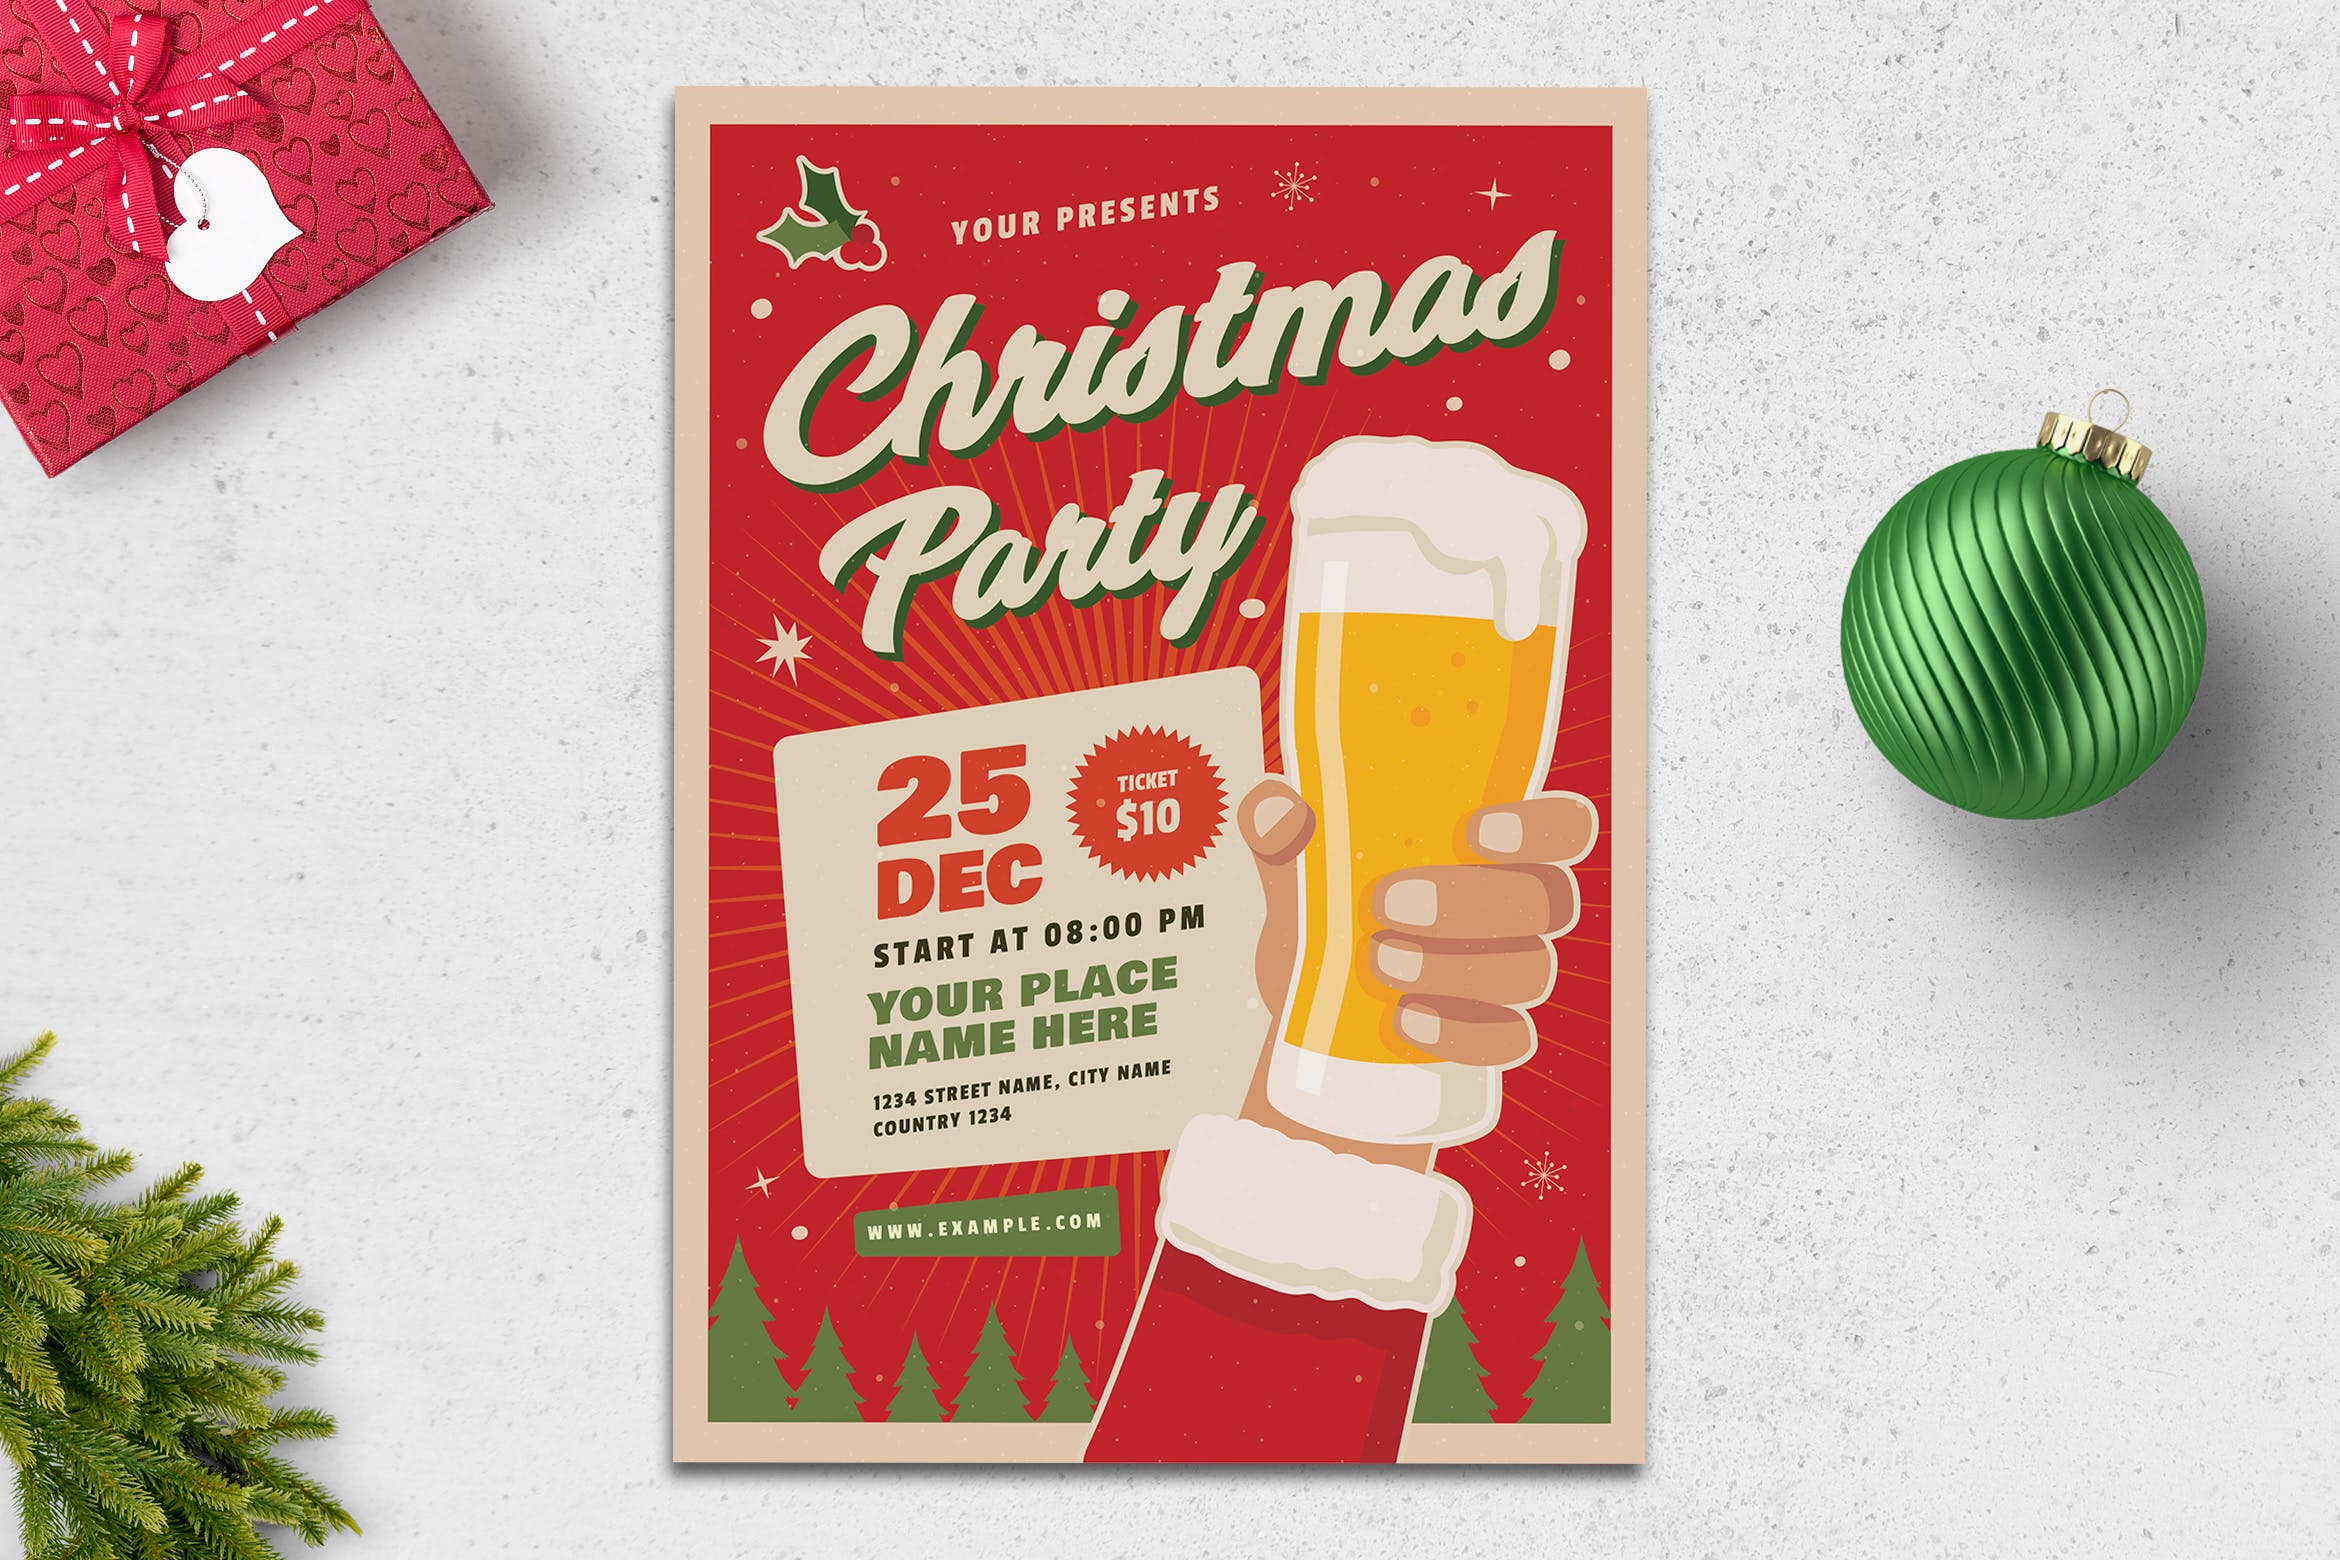 复古设计风格圣诞啤酒节海报传单模板 Retro Christmas Flyer插图